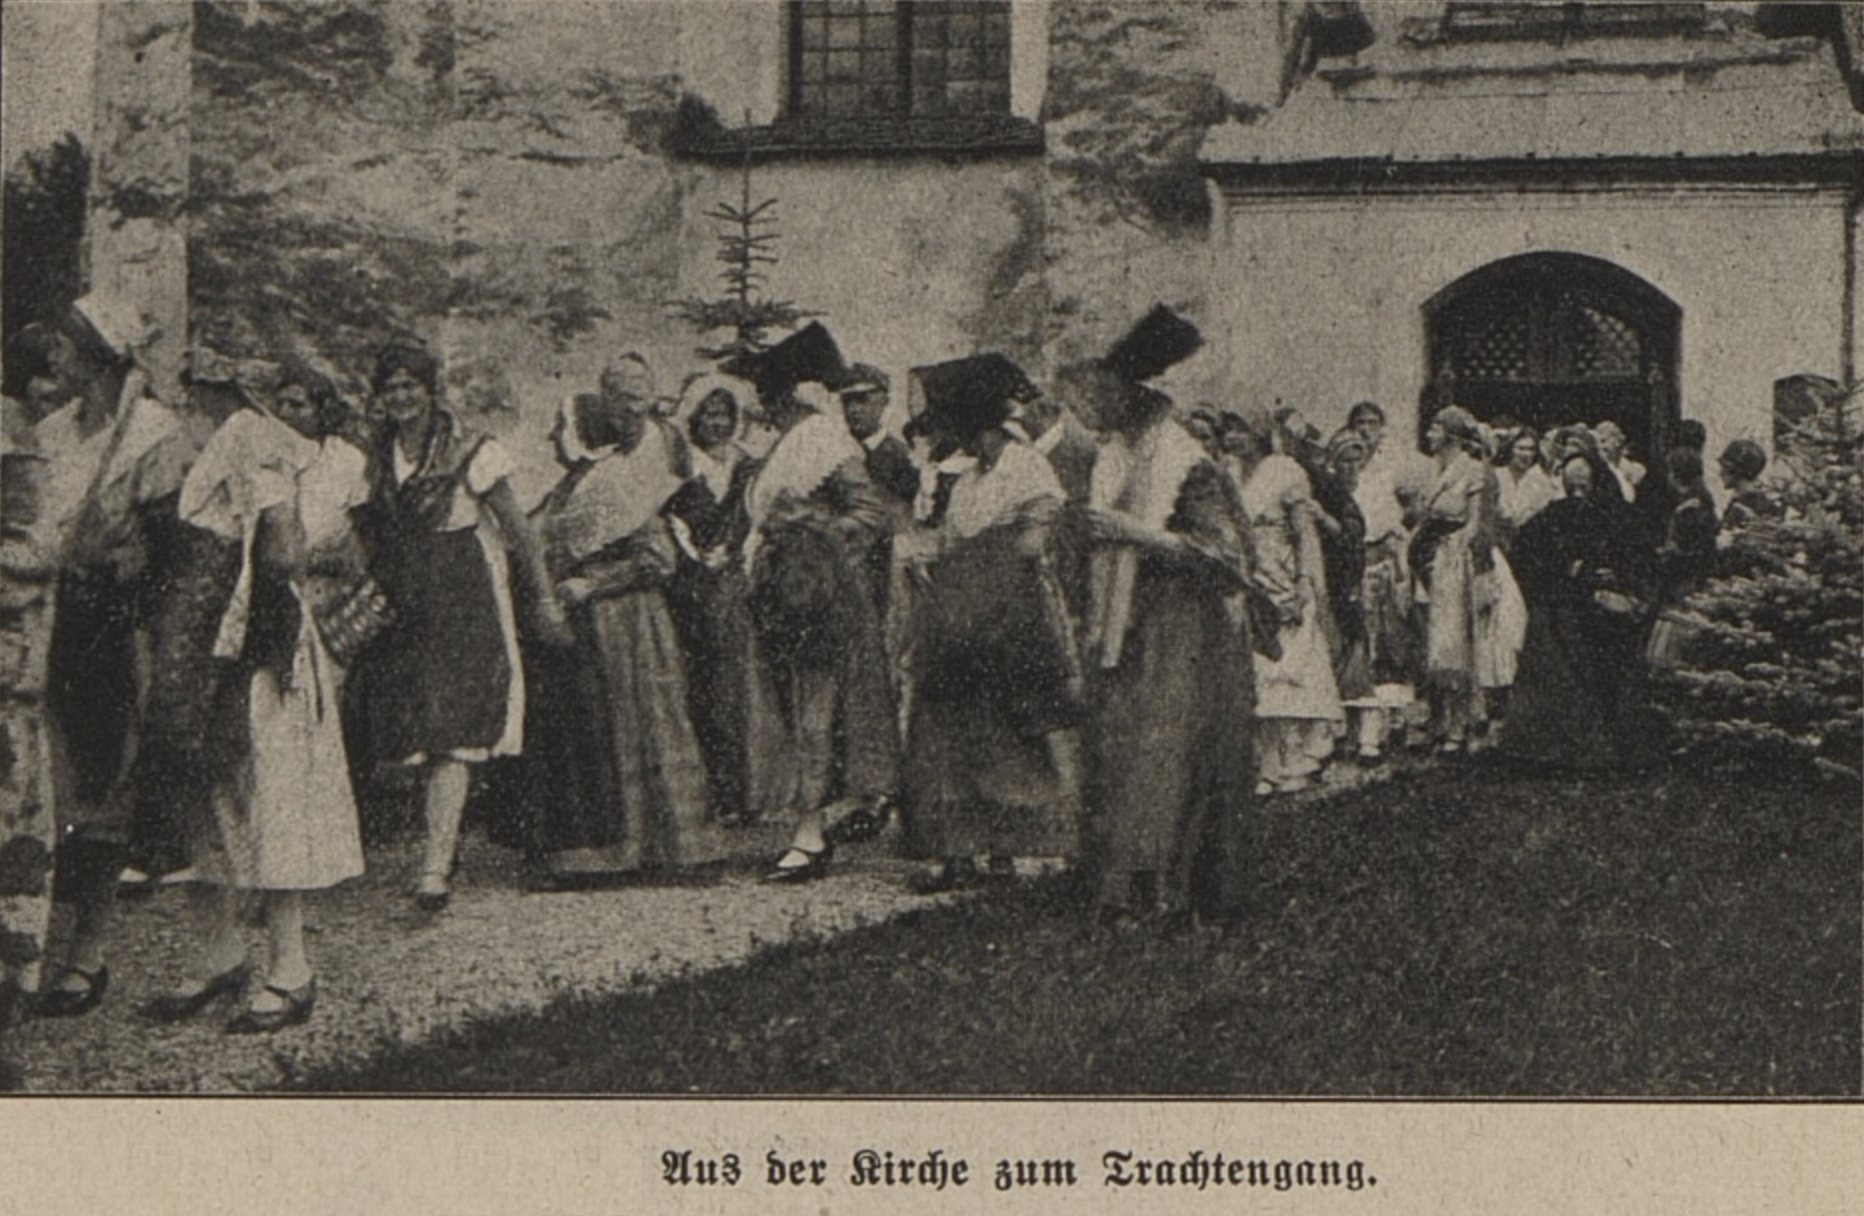 Trachtensonntag in Groß-Ullersdorf im Zuge der Trachtenbelebung wohl 15.8.1930